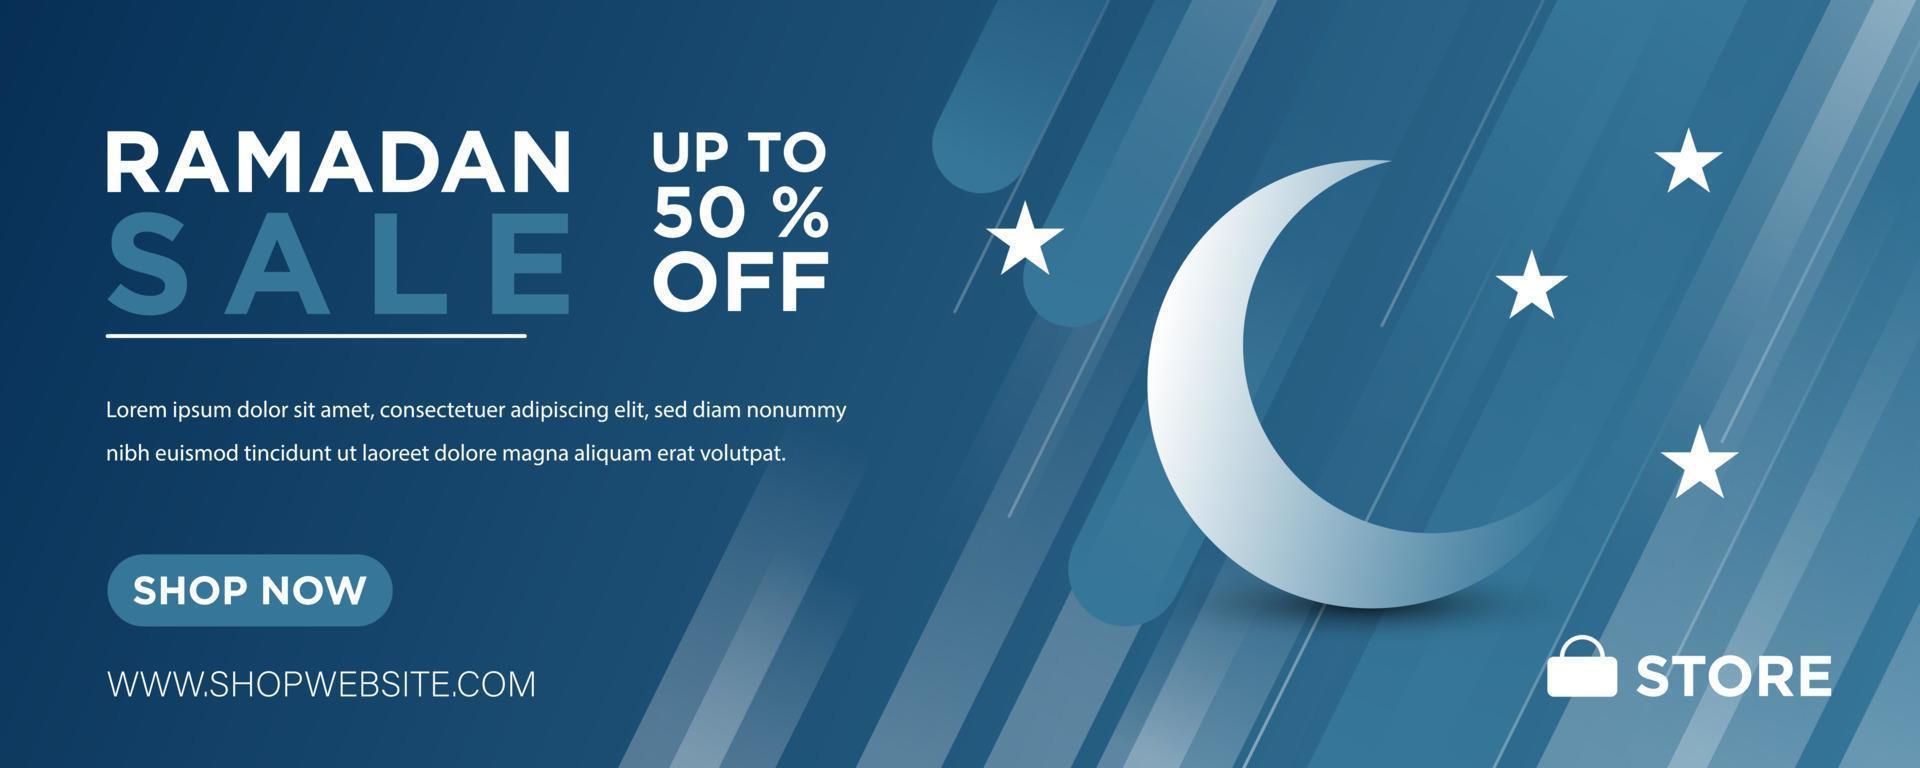 banner web moderno com fundo azul. venda do ramadã. ilustração vetorial. vetor